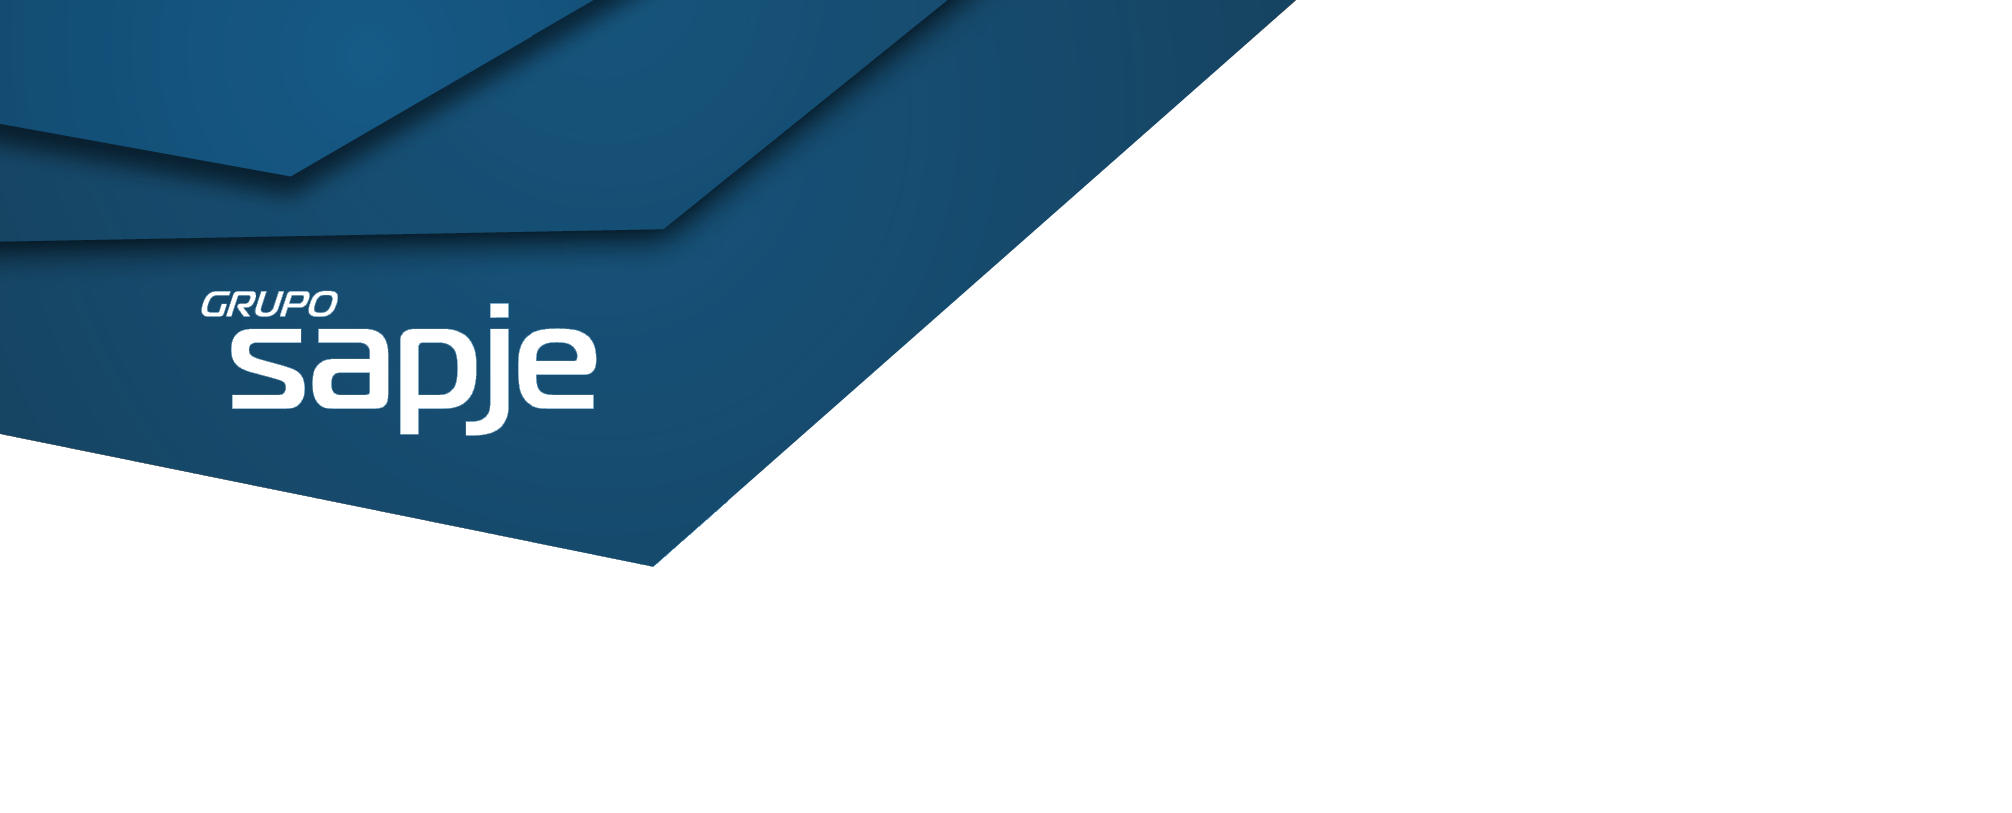 Cabecera con logo del grupo SAPJE azul oscuro